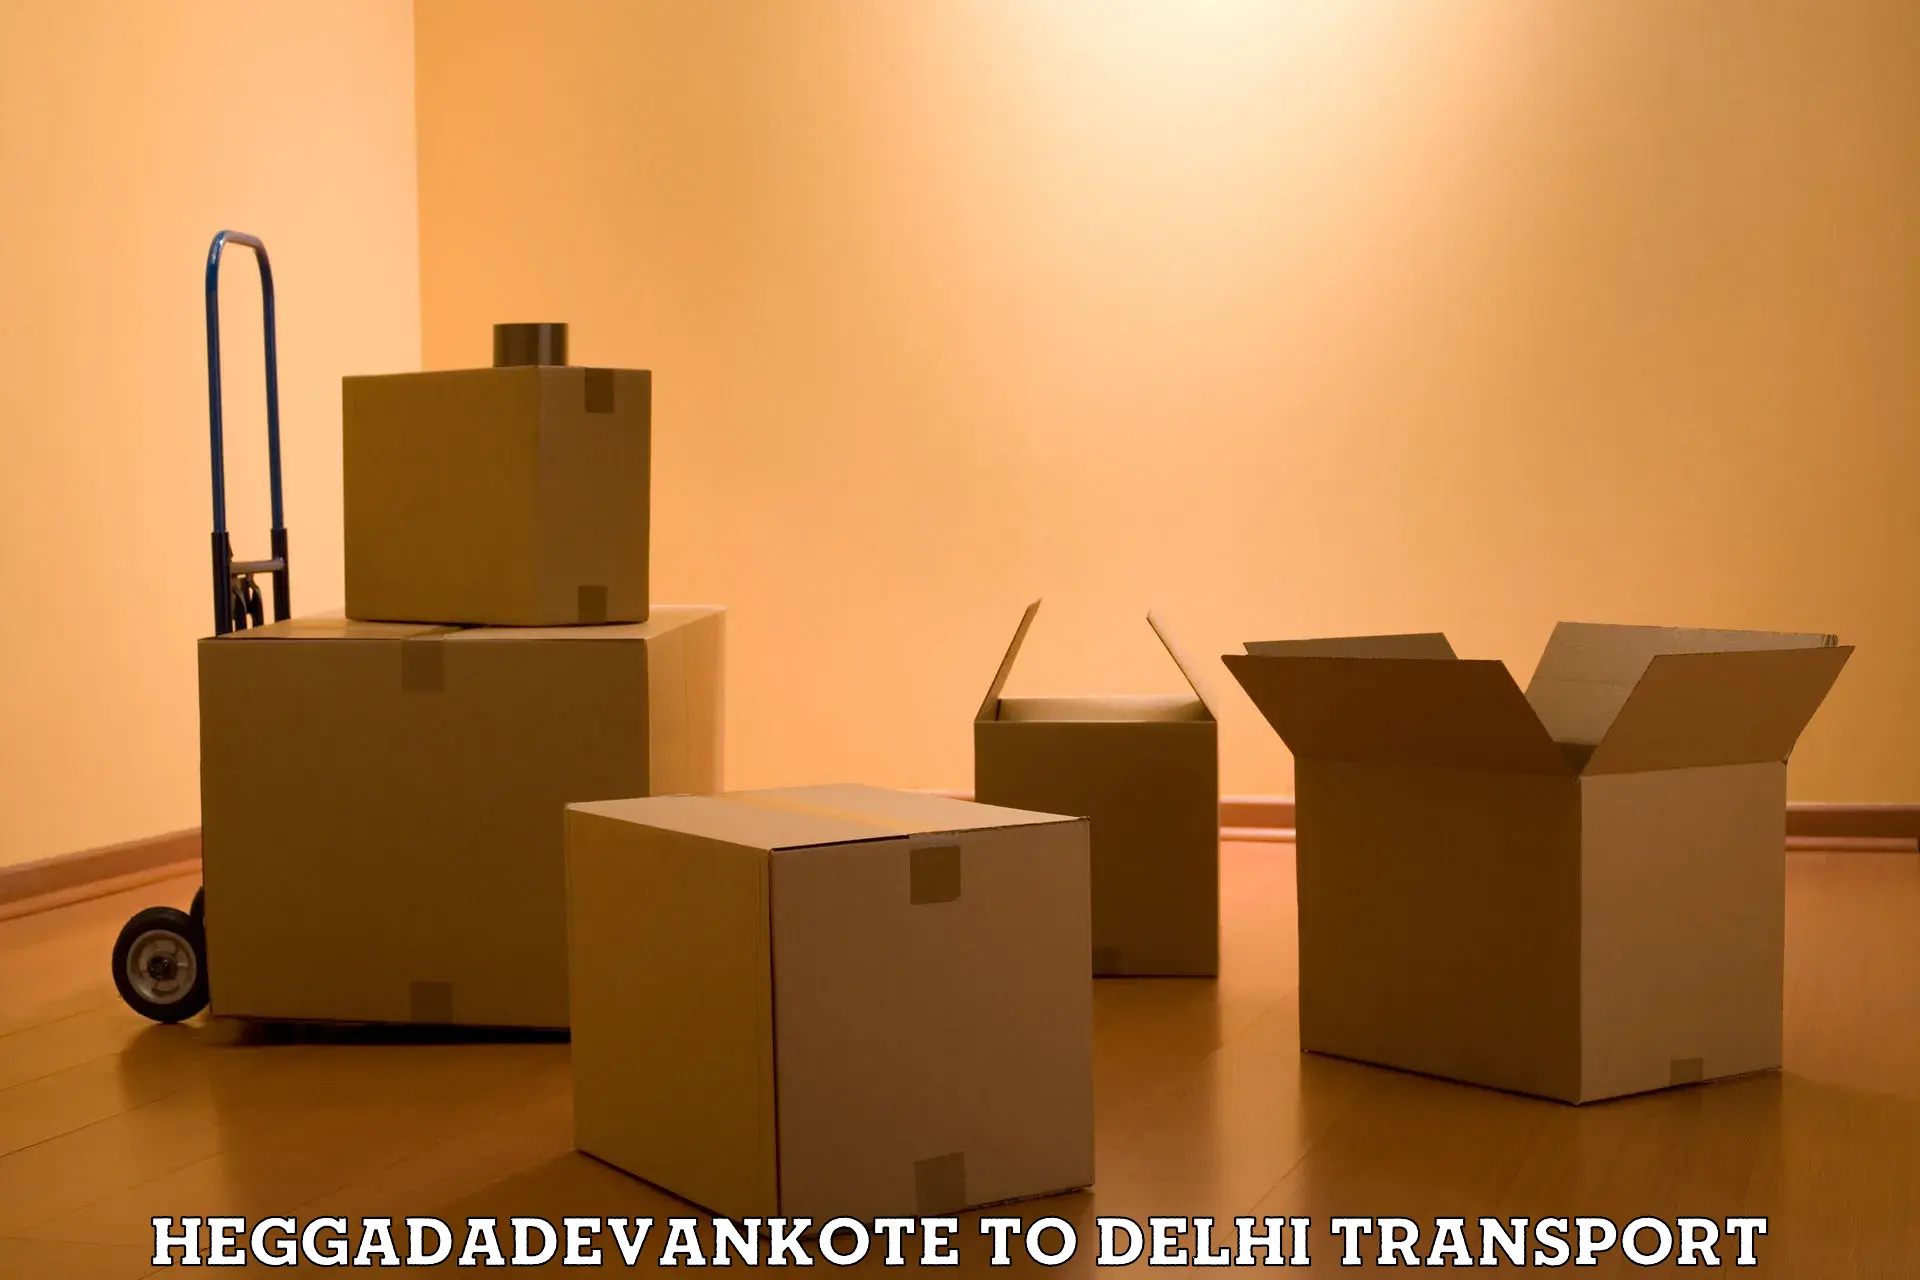 Interstate transport services Heggadadevankote to NIT Delhi